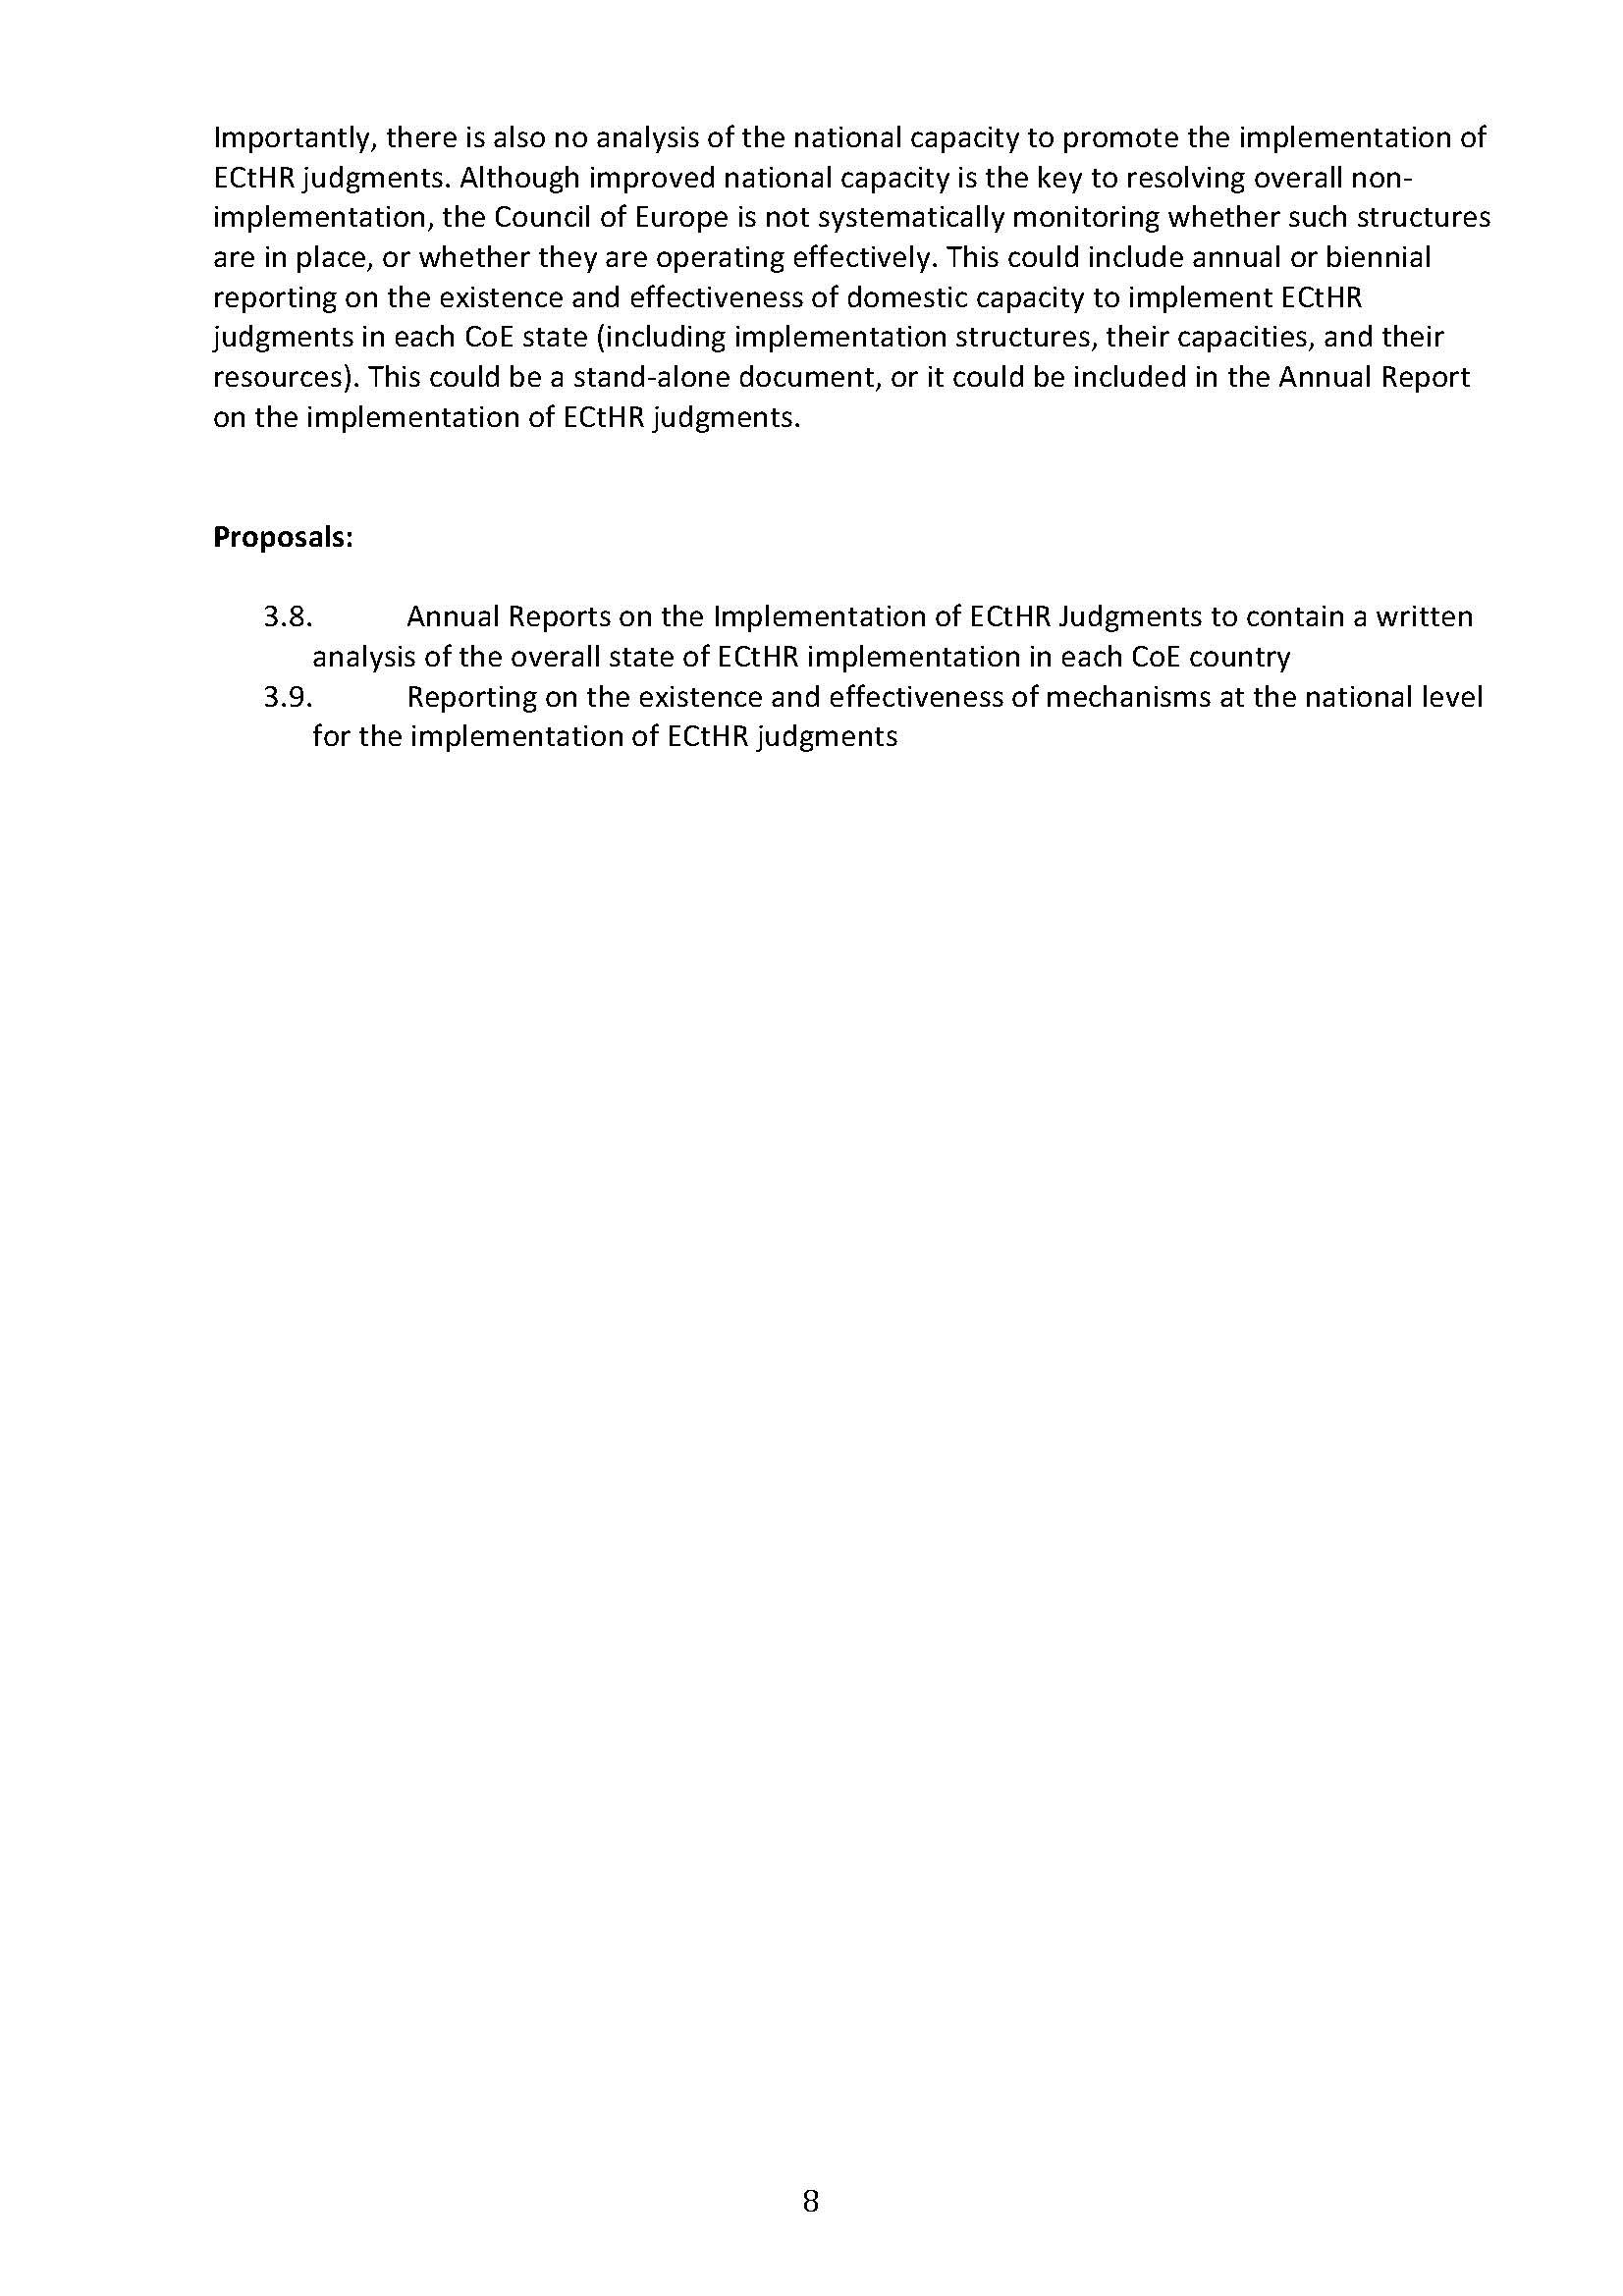 EIN Proposals Document_Page_8.jpg